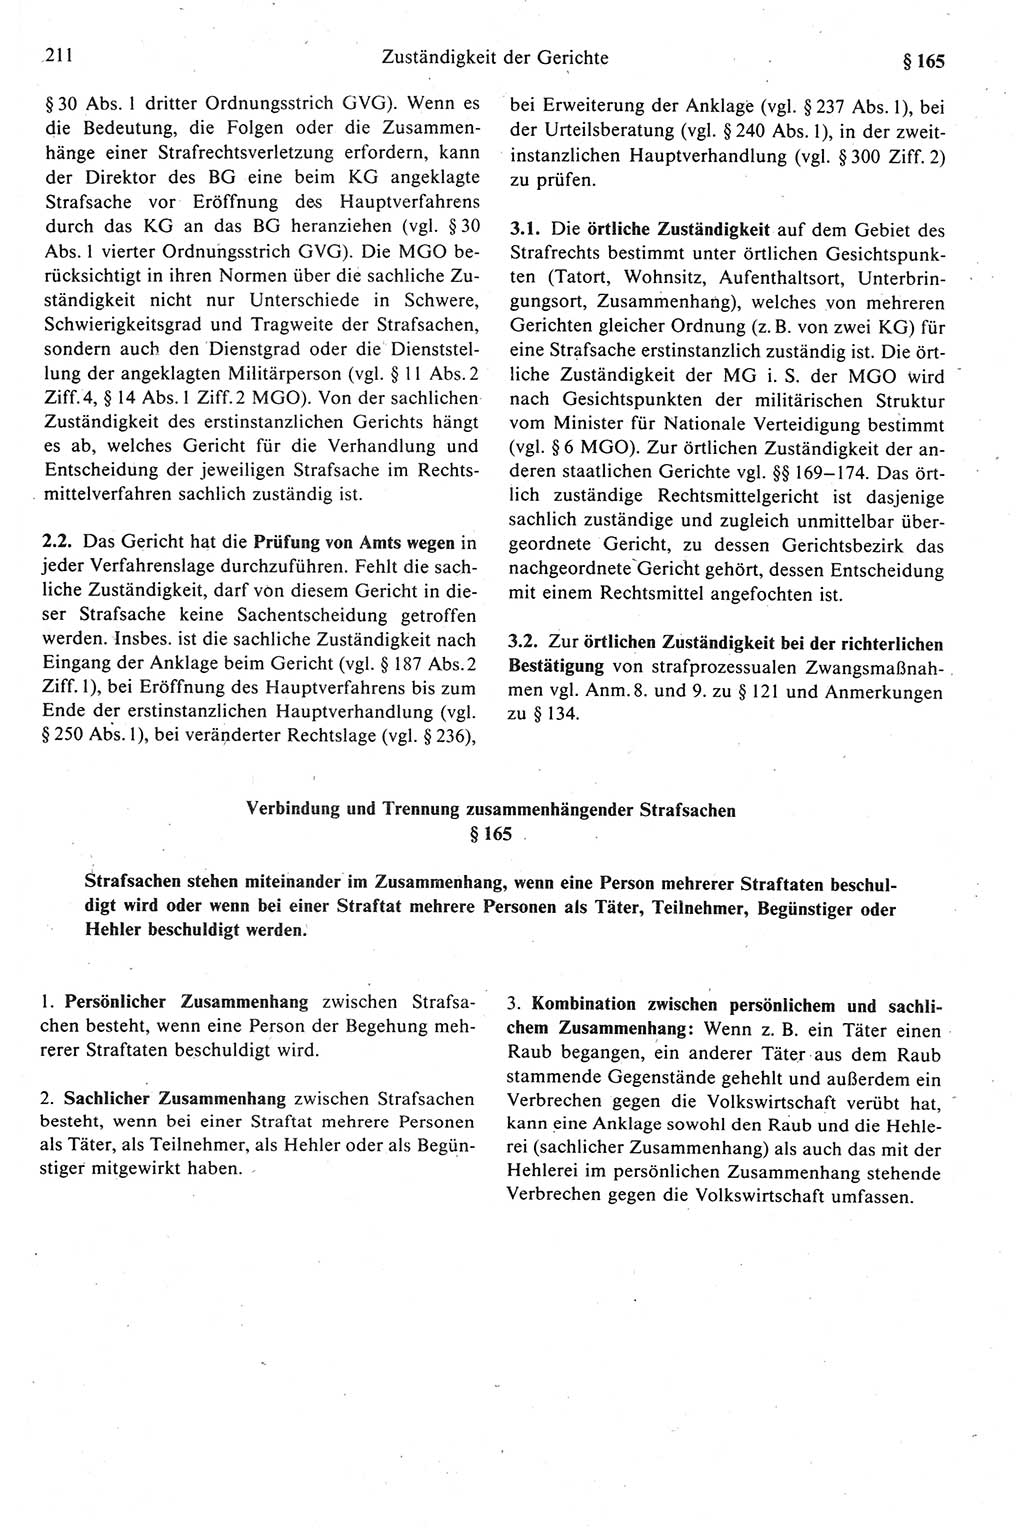 Strafprozeßrecht der DDR (Deutsche Demokratische Republik), Kommentar zur Strafprozeßordnung (StPO) 1989, Seite 211 (Strafprozeßr. DDR Komm. StPO 1989, S. 211)